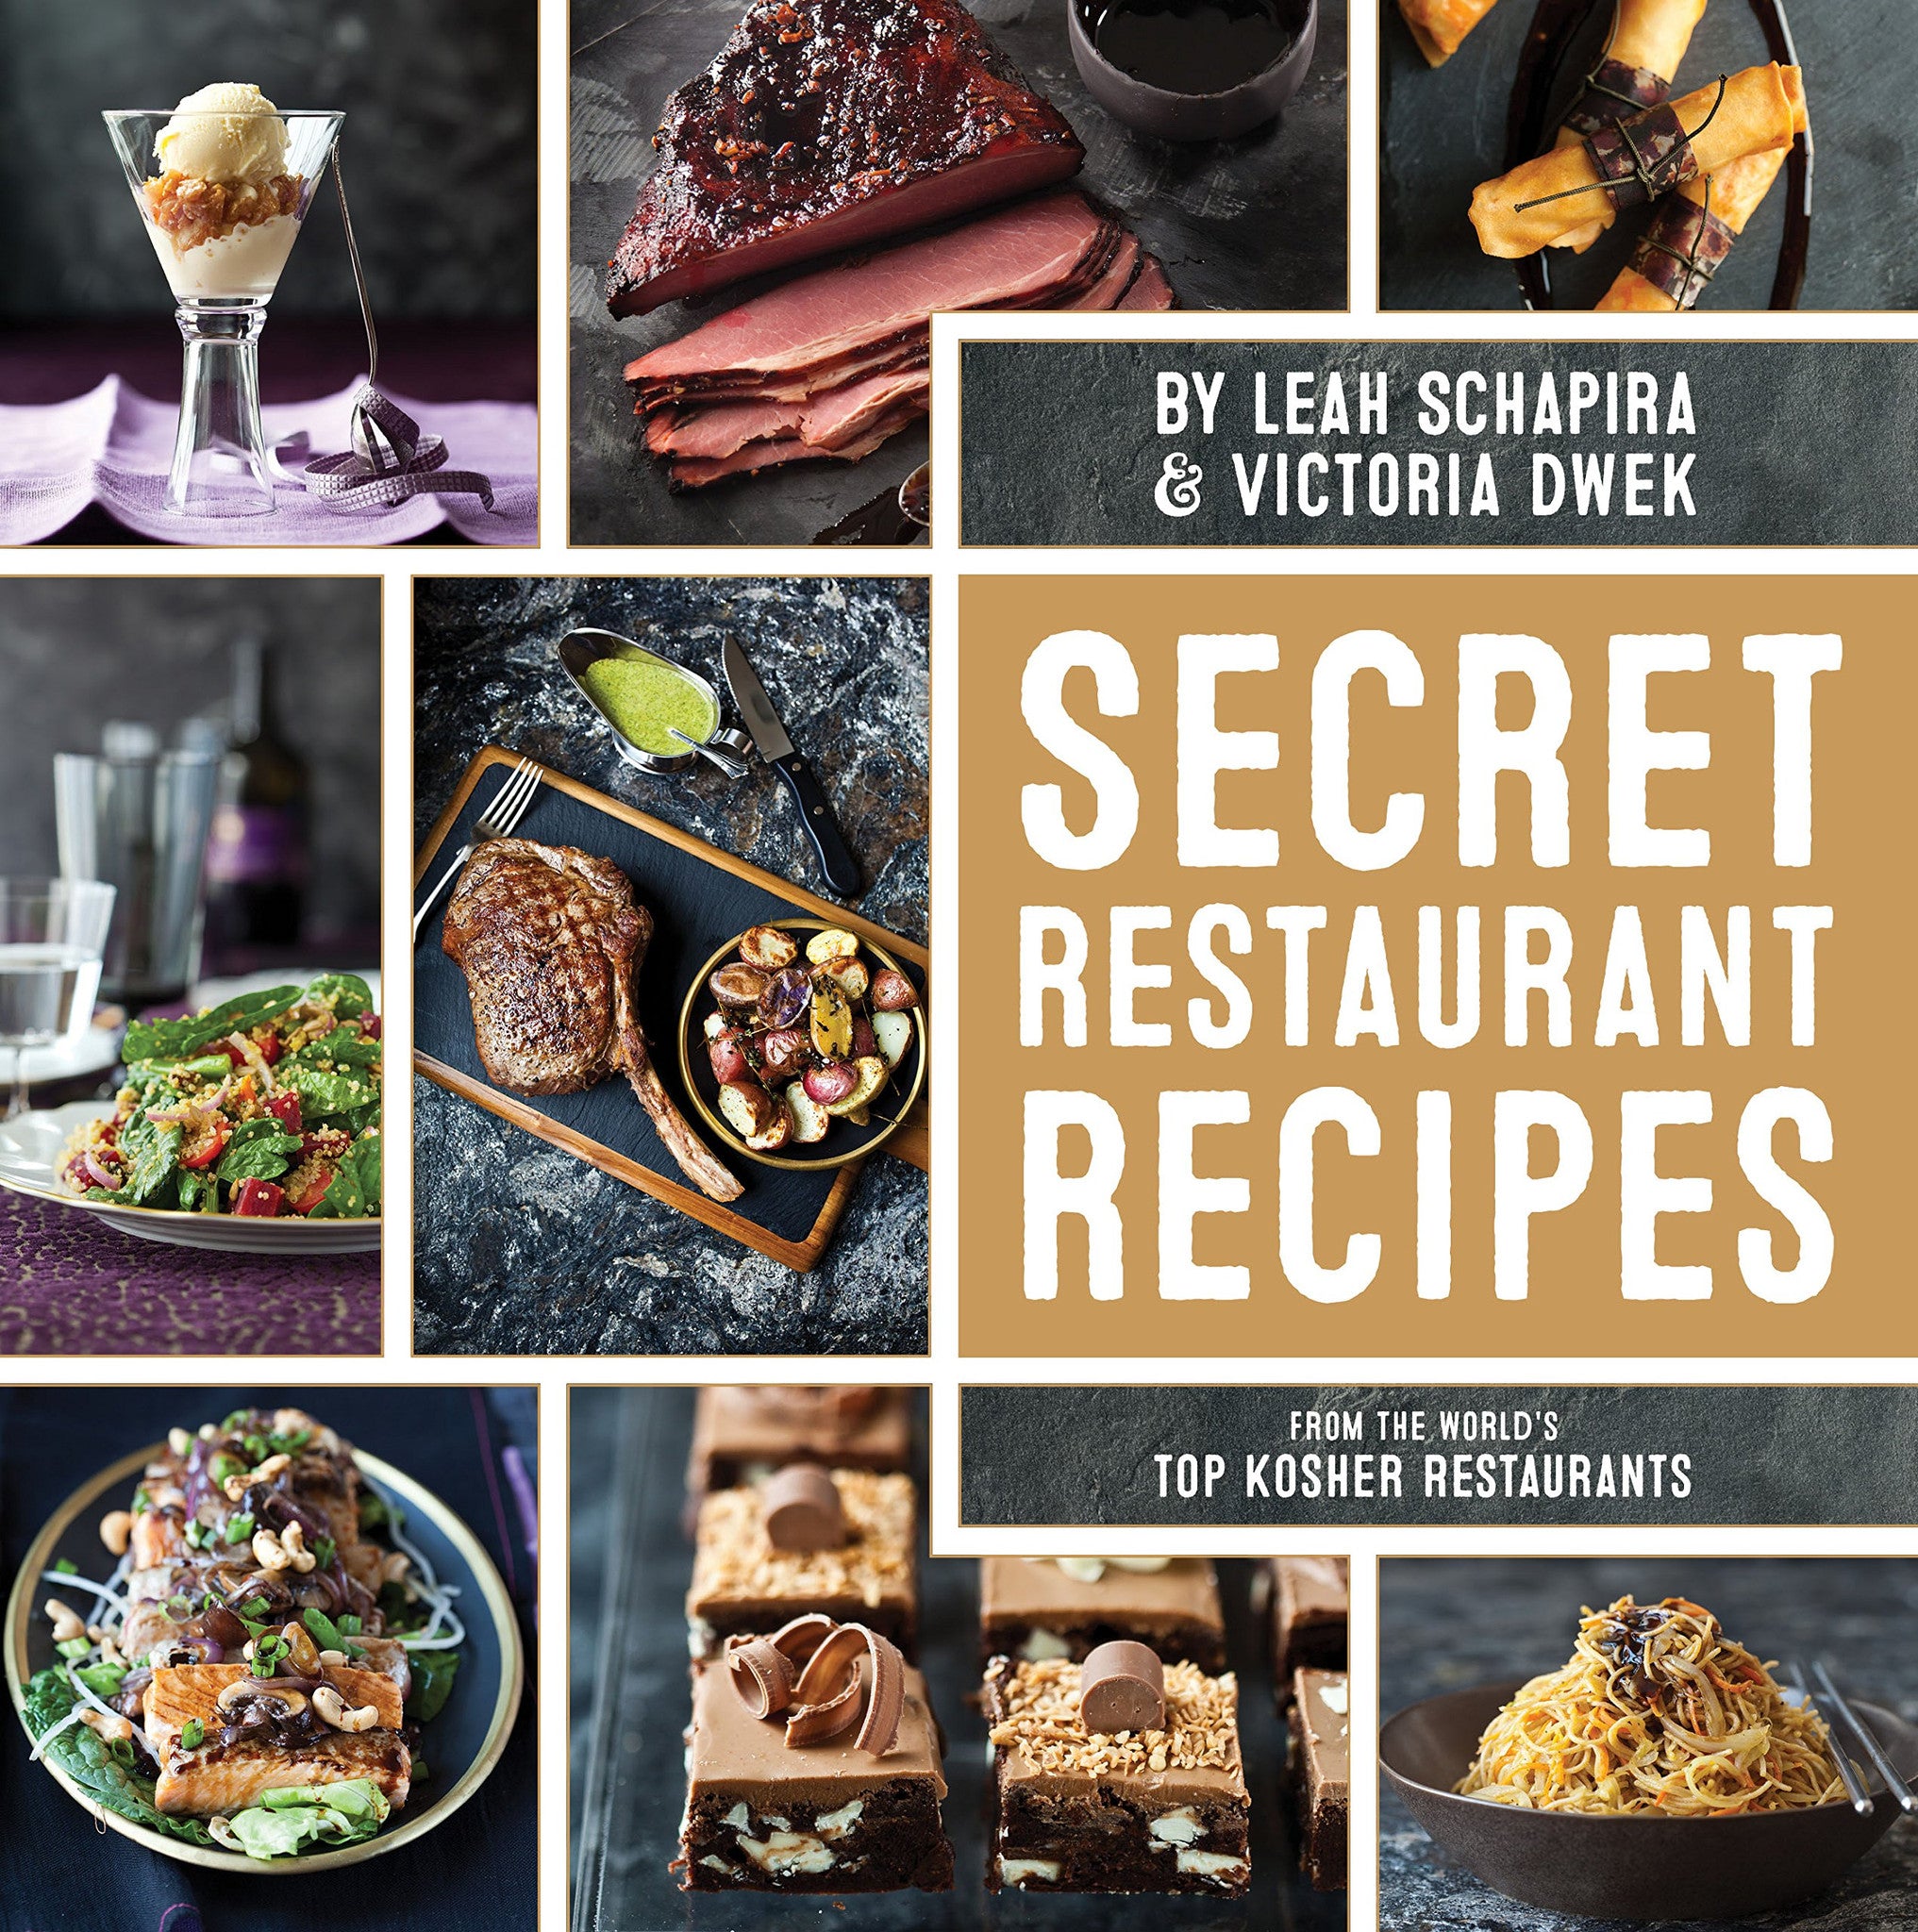 Victoria Dwek & Leah Schapira - Secret Restaurant Recipes